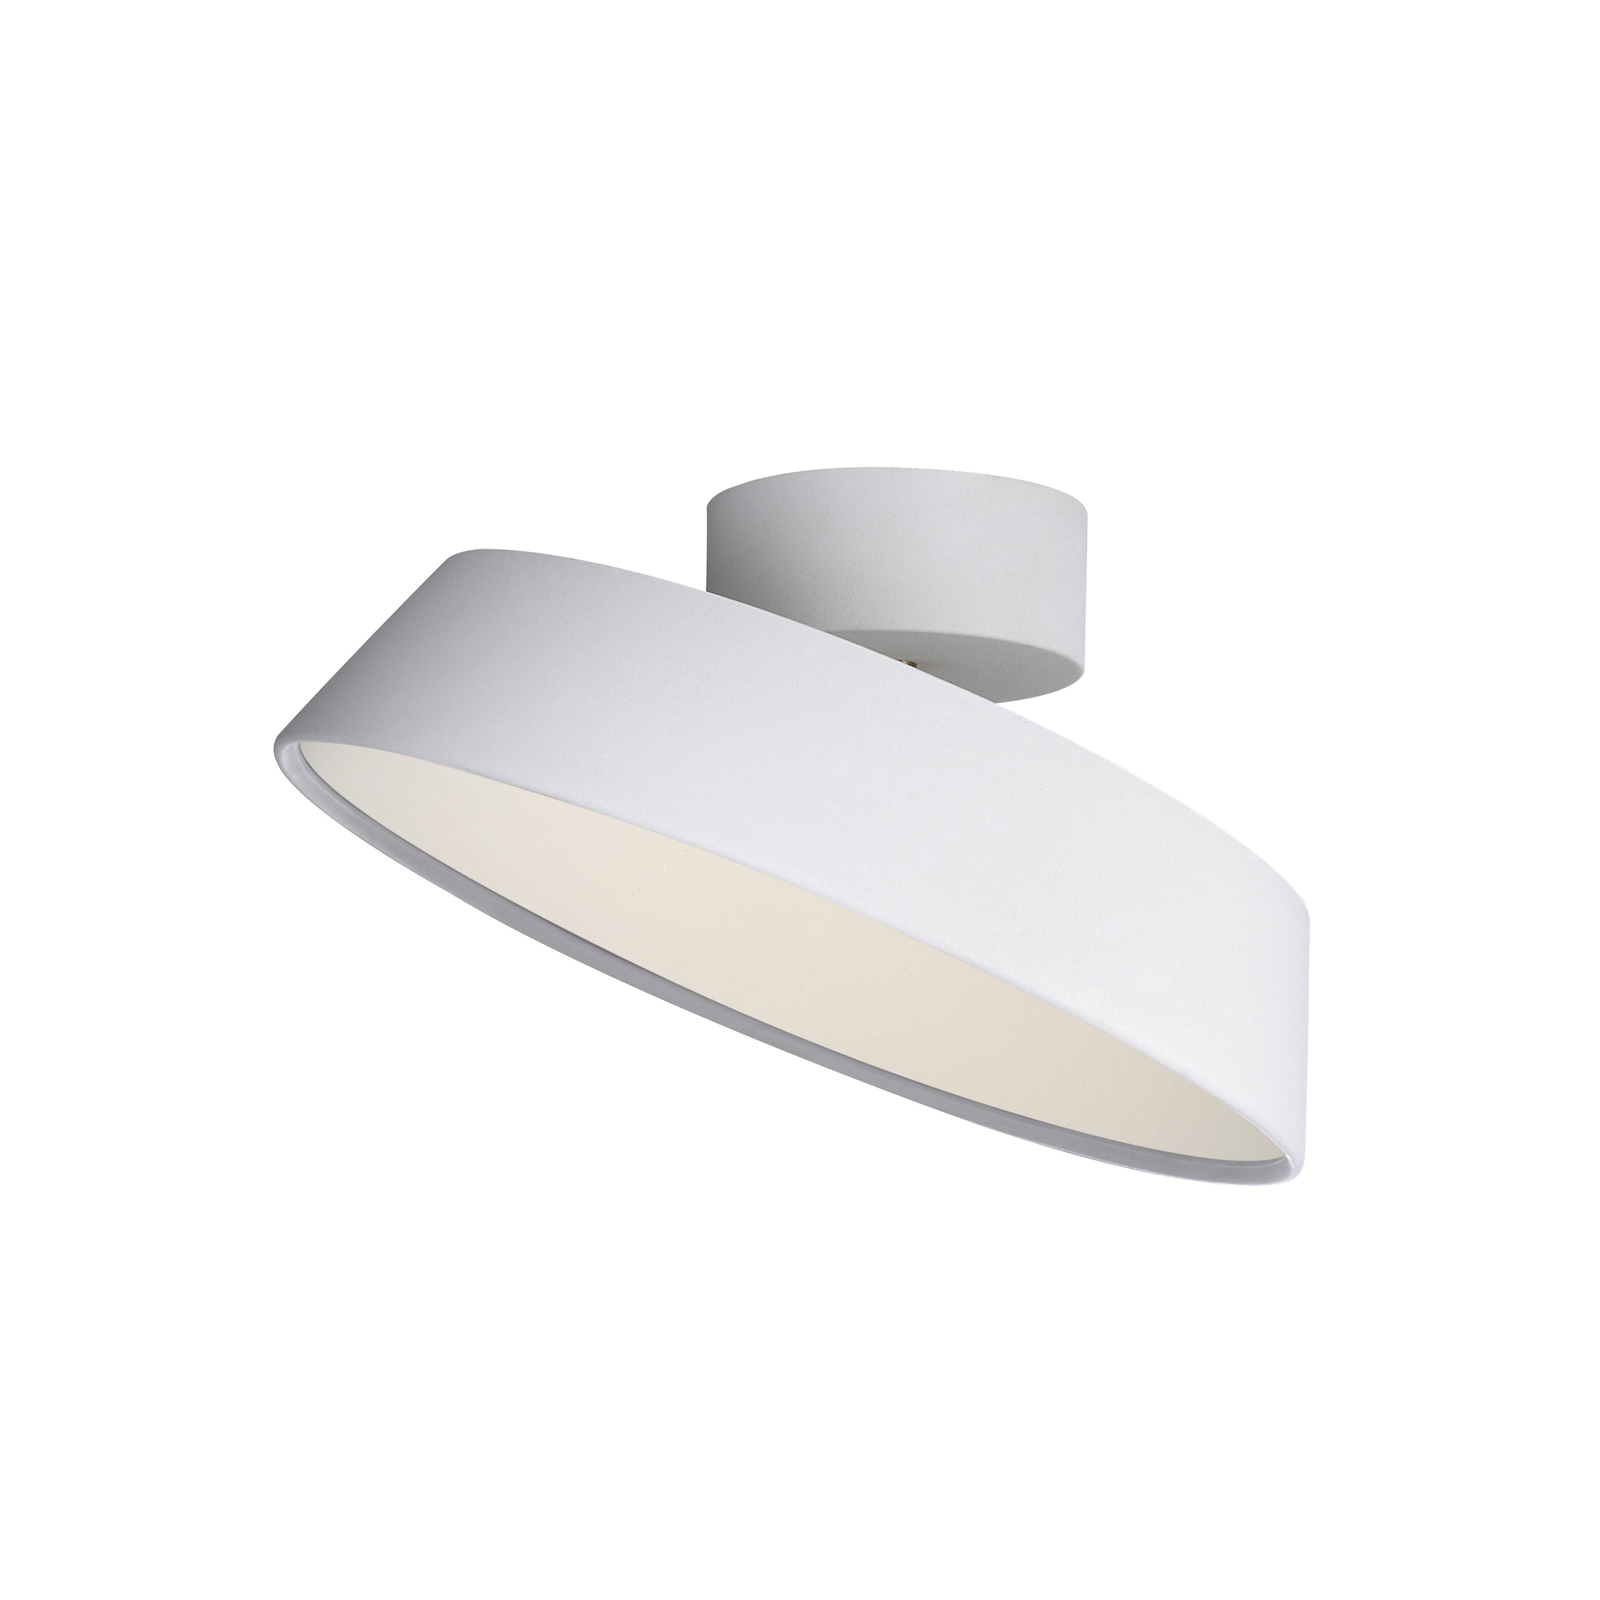 LED-Deckenleuchte Kaito 2 Dim, weiß, Ø 30 cm, dimmbar